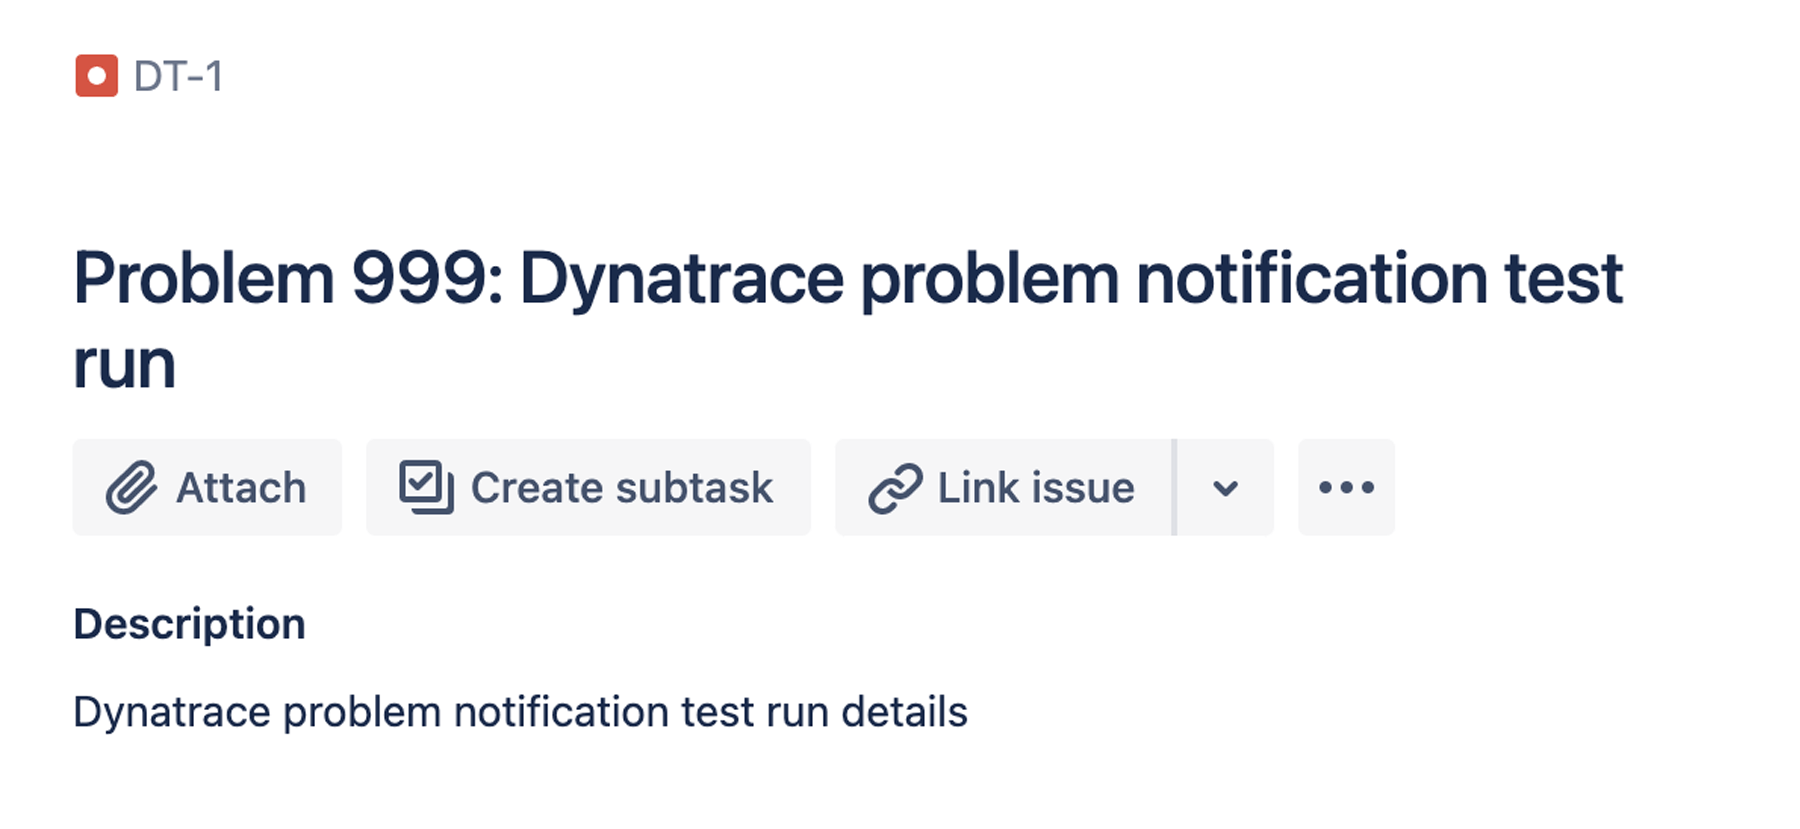 Execução do teste de notificação de problemas do Dynatrace